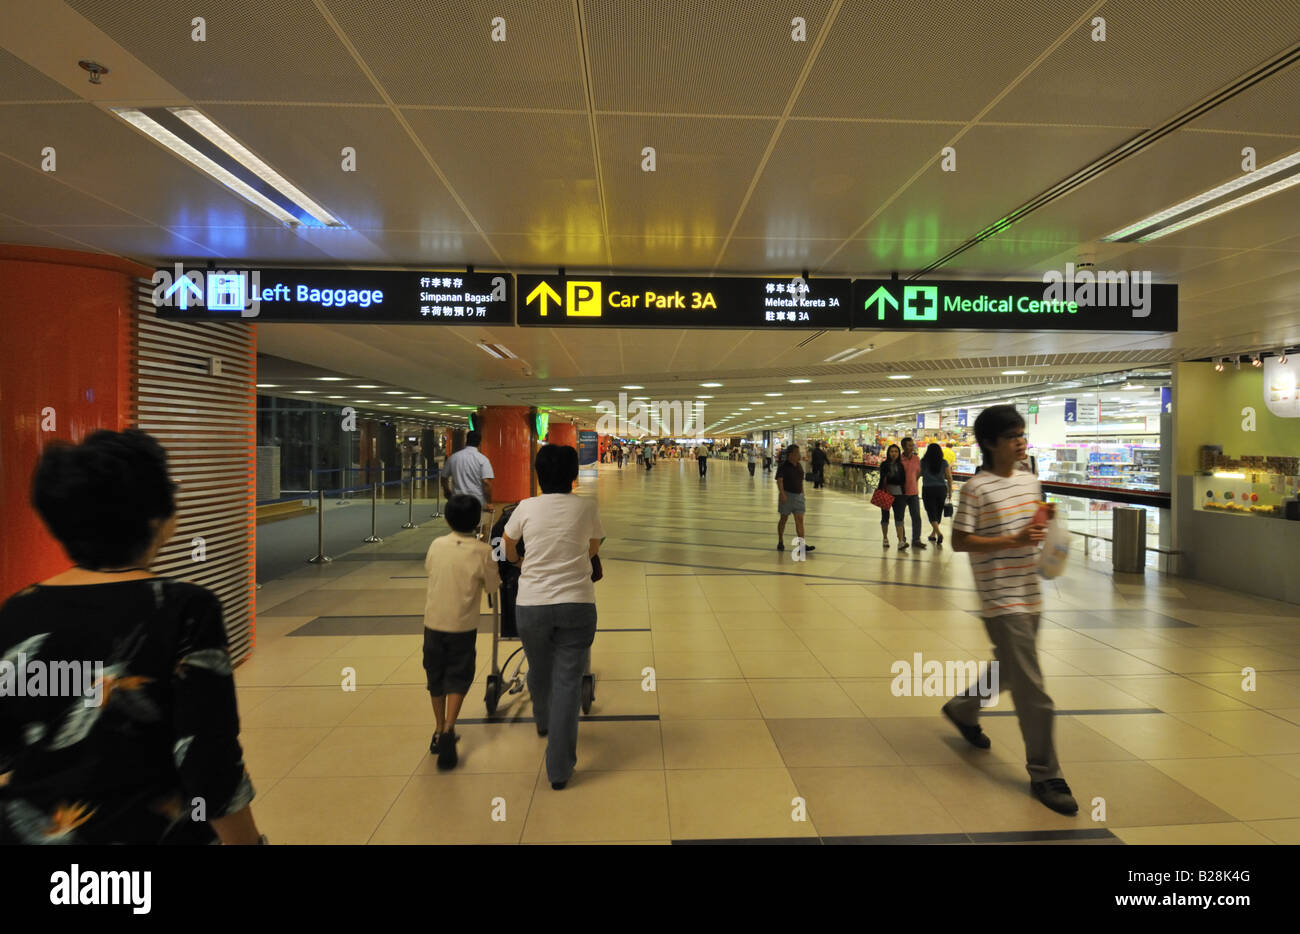 Terminal del Aeropuerto Internacional de Changi de Singapur 3 paso del estacionamiento, dejó el equipaje y centro médico. Foto de stock